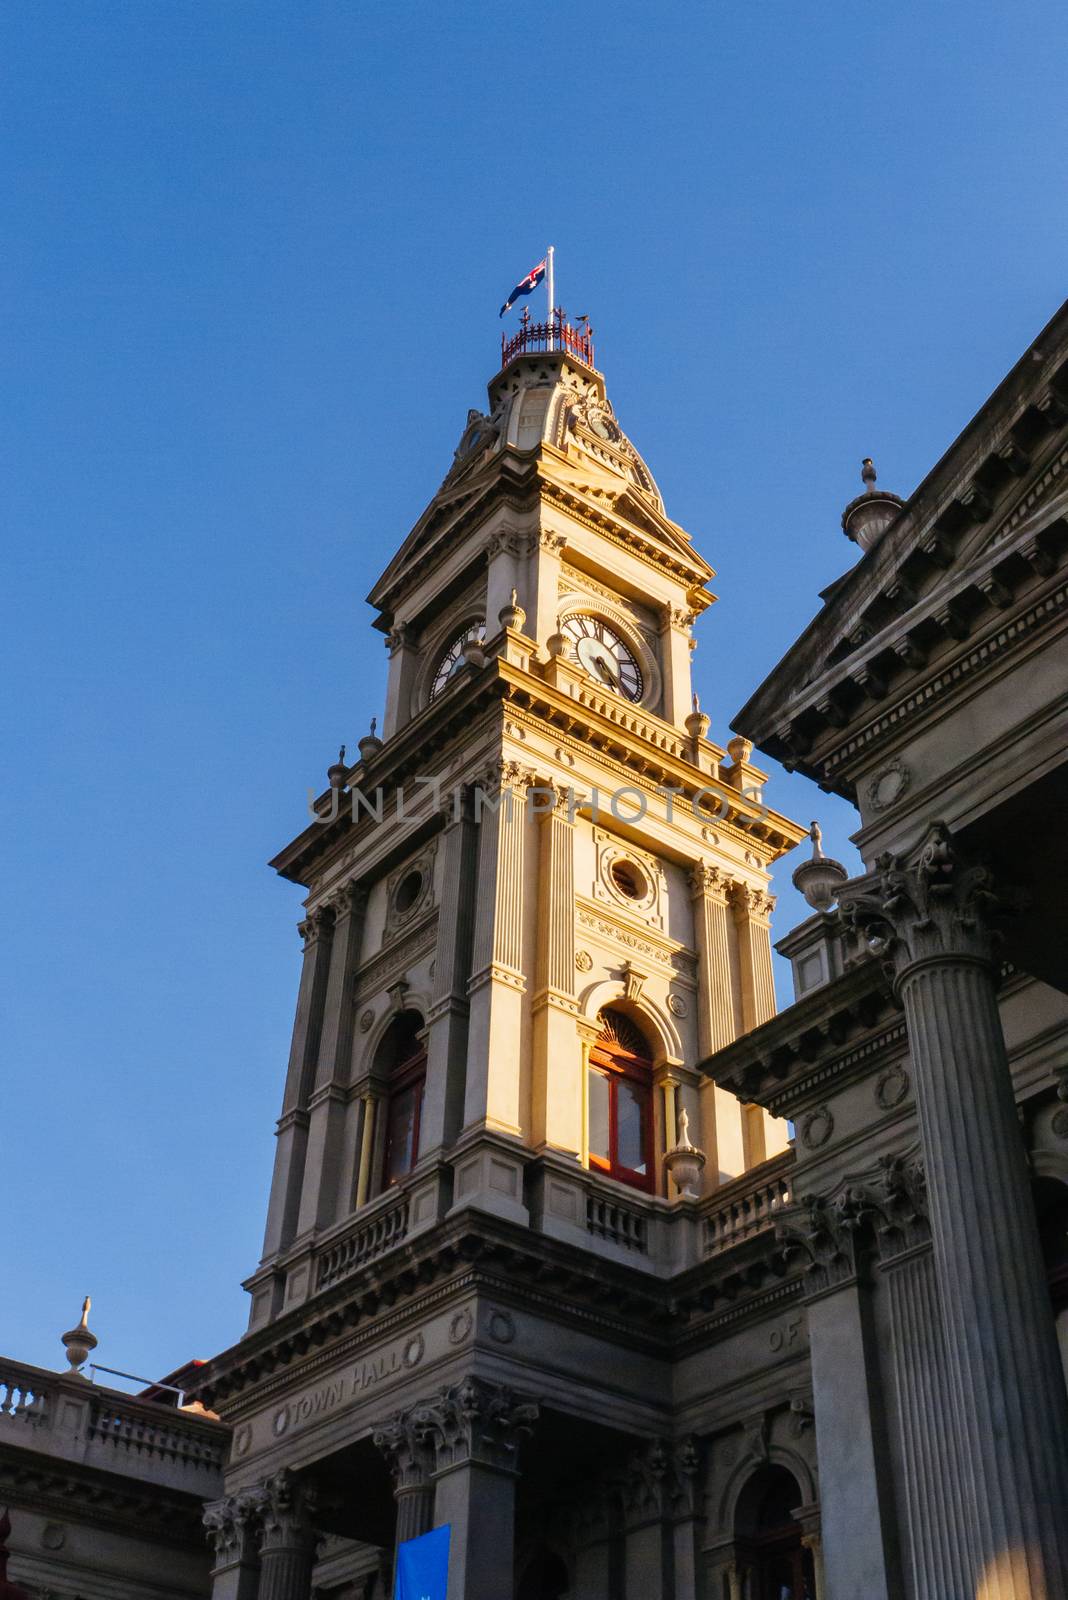 Melbourne, Australia - June 12, 2020: The majestic Fitzroy Town Hall and library near Brunswick St in Fitzroy, Victoria, Australia